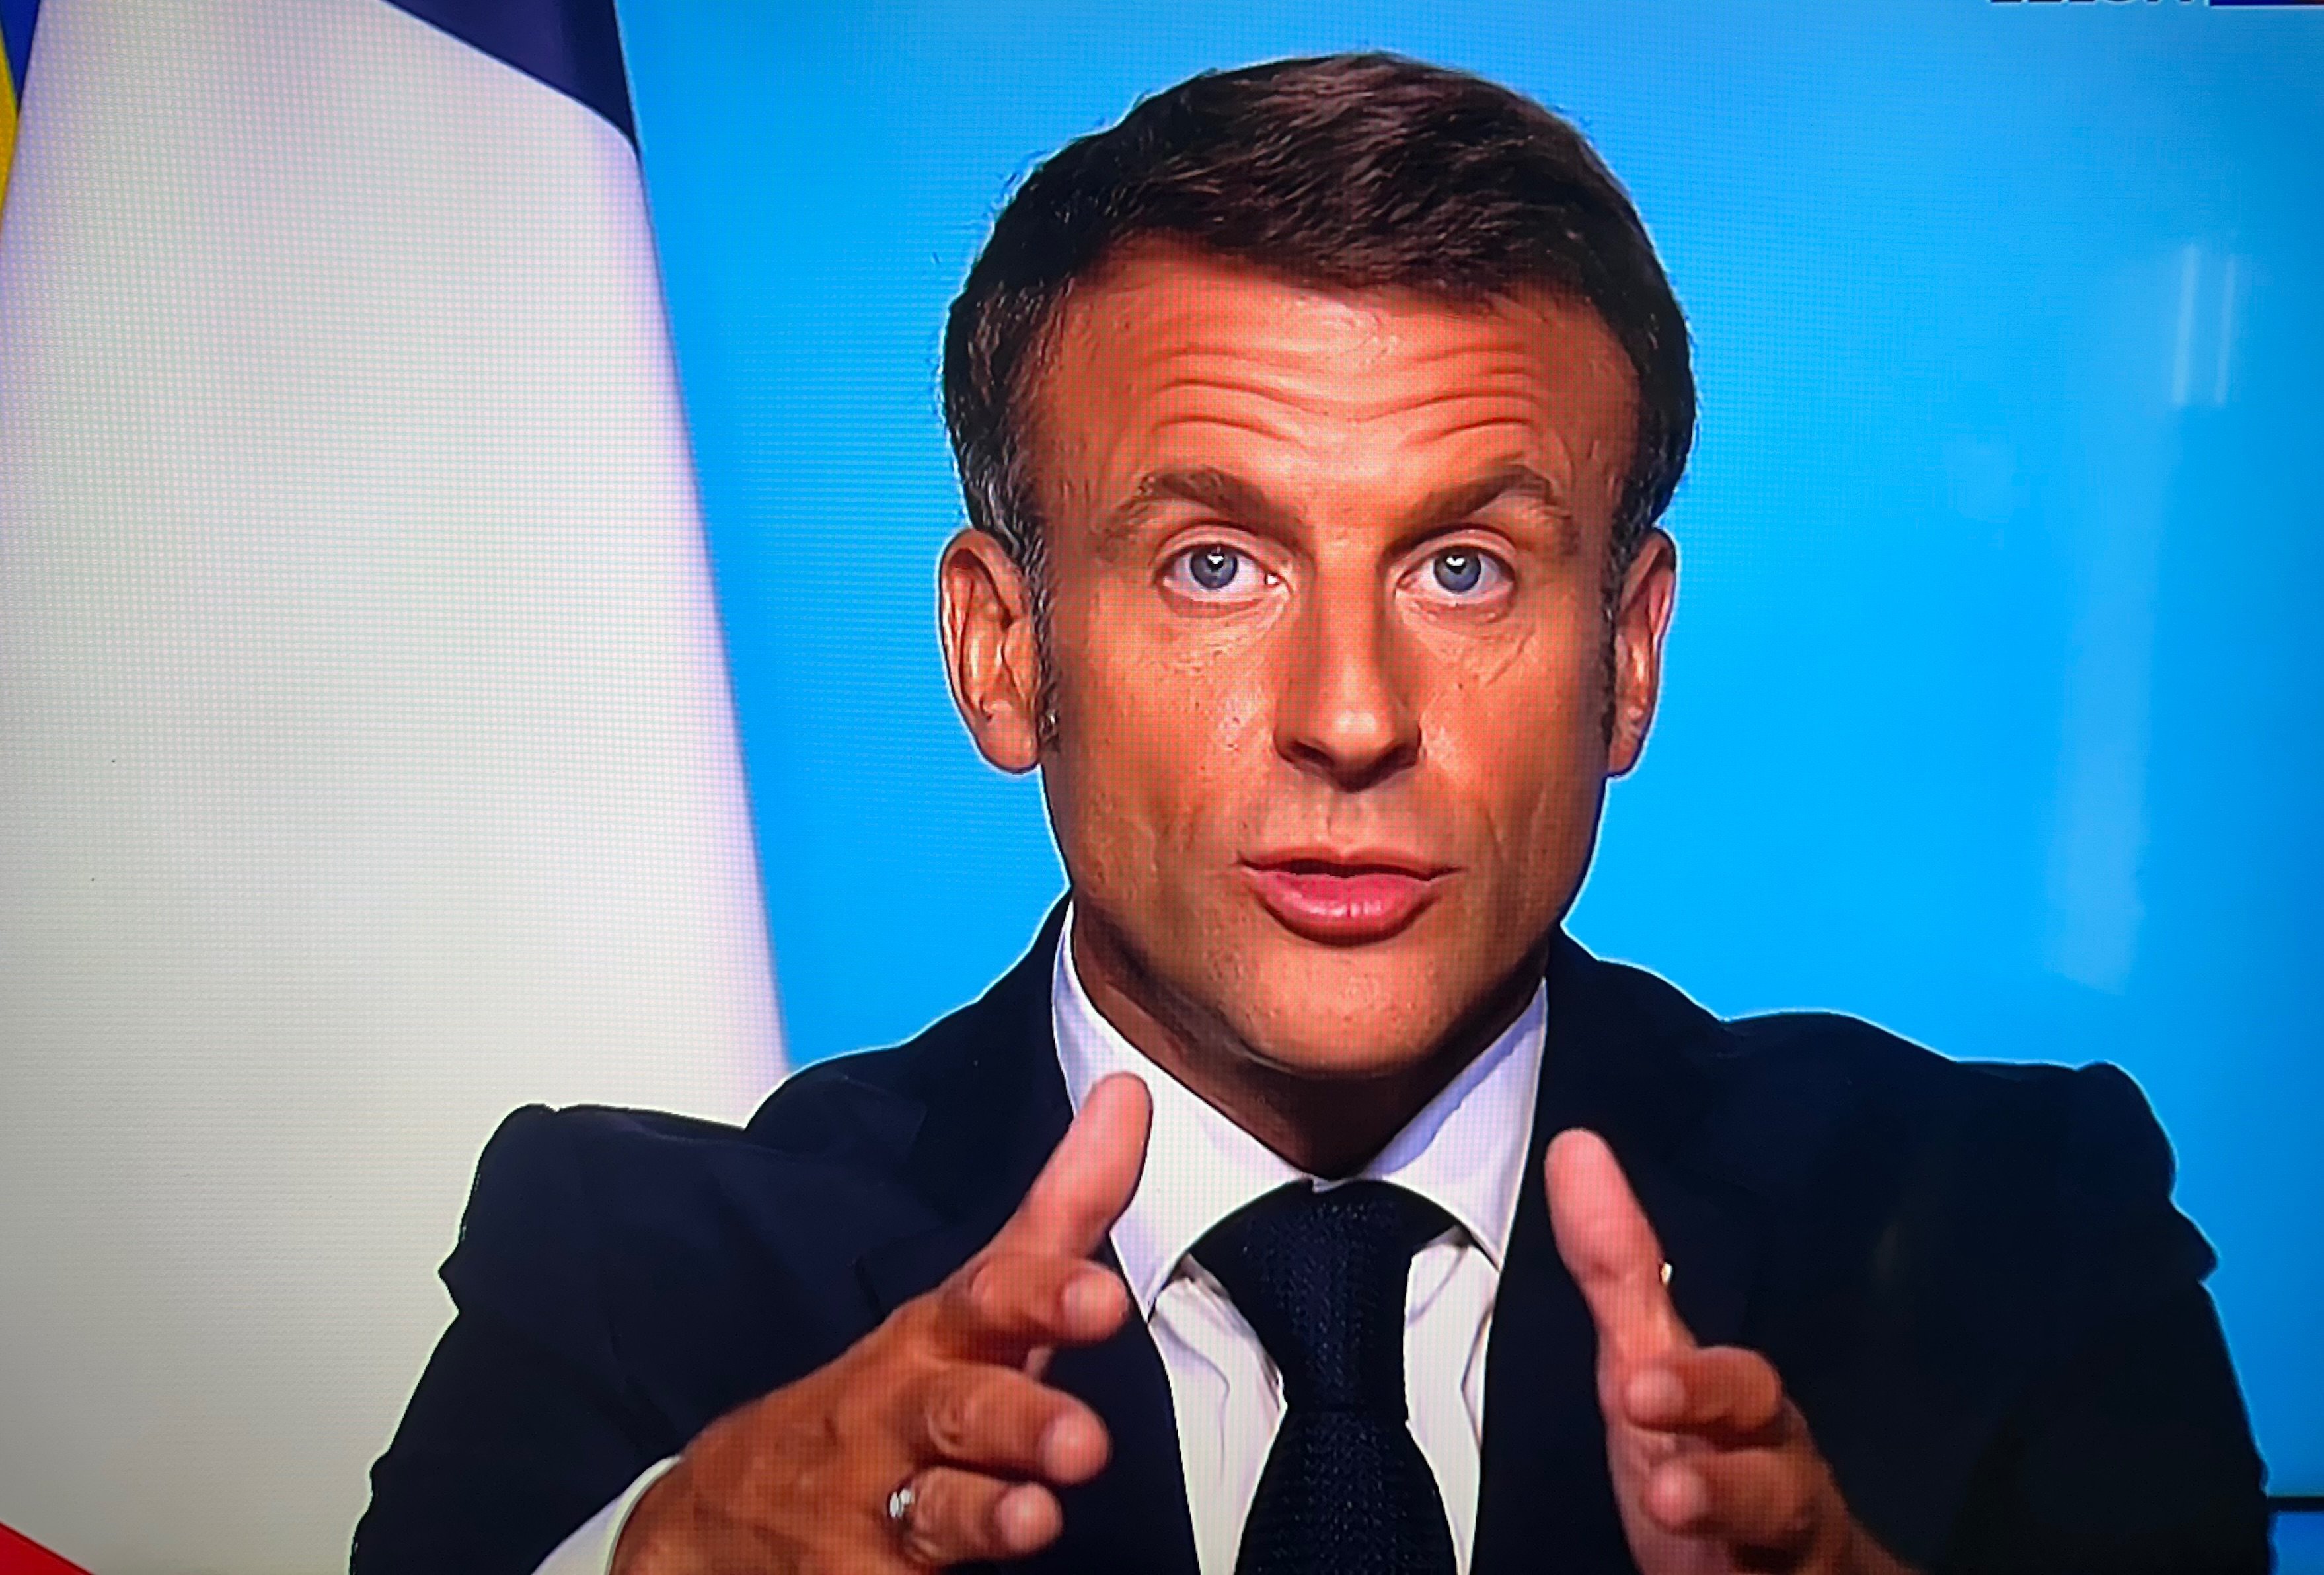 Intervention à la télévision d’Emmanuel Macron président de la république télévision JT de TF1. (Illustration) LP/ Aurélie Audureau